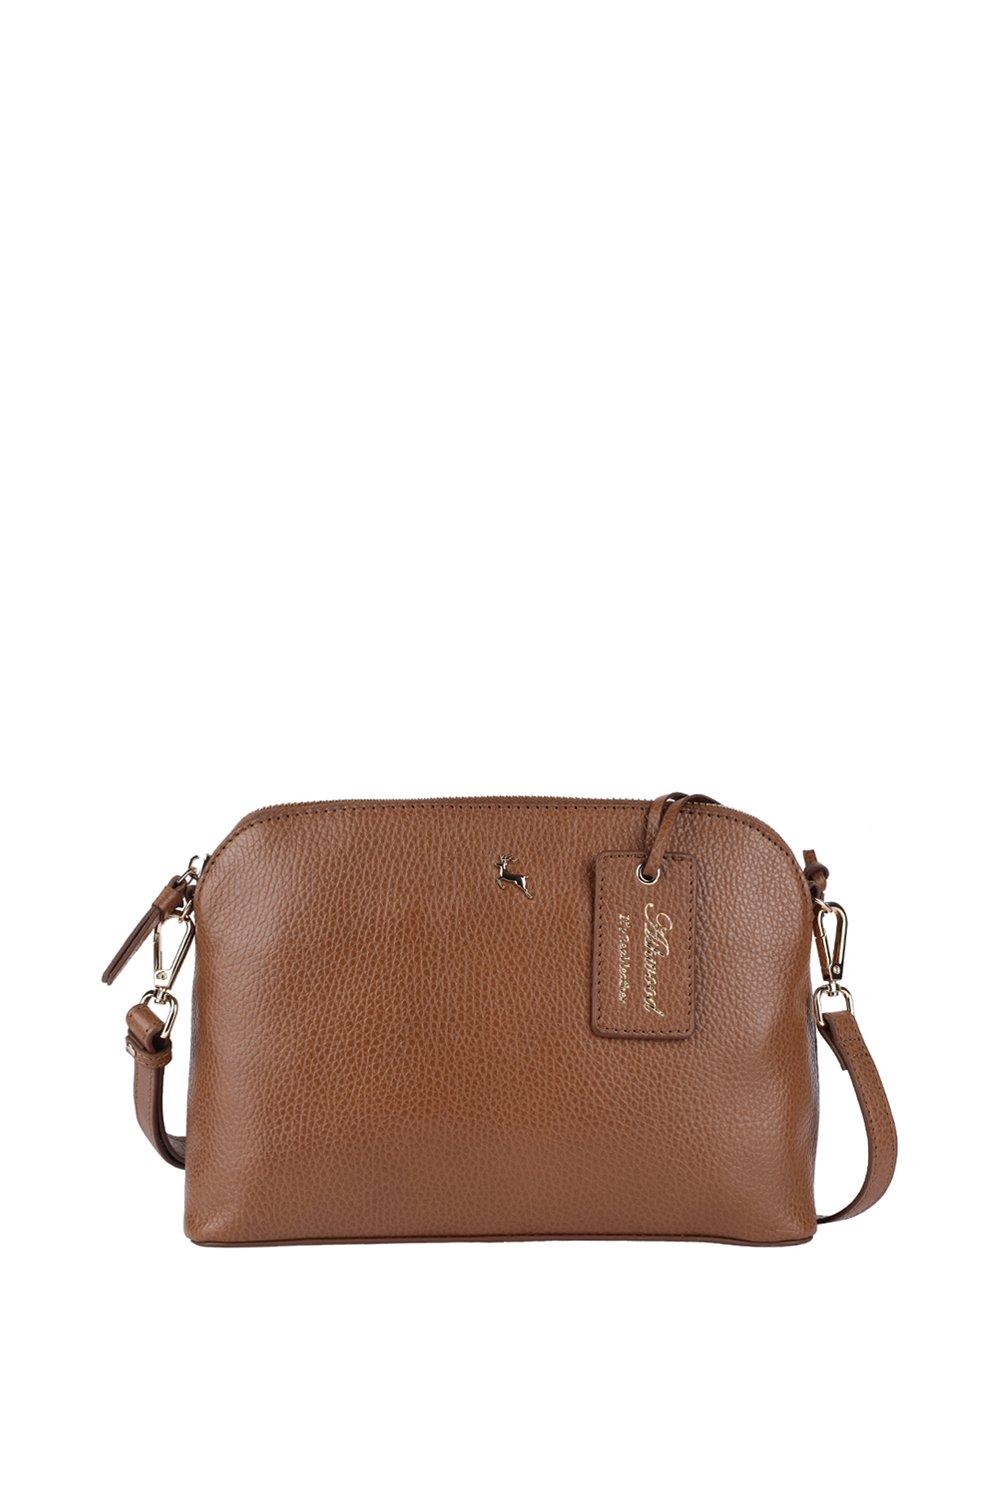 Кожаная сумка через плечо 'Brill' Ashwood Leather, коричневый